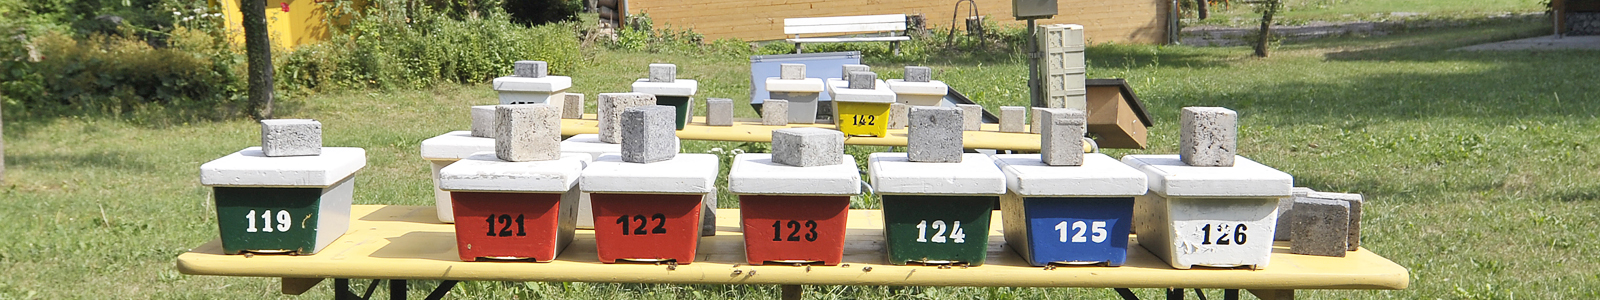 Viele Bienenstöcke, numeriert ©DLR